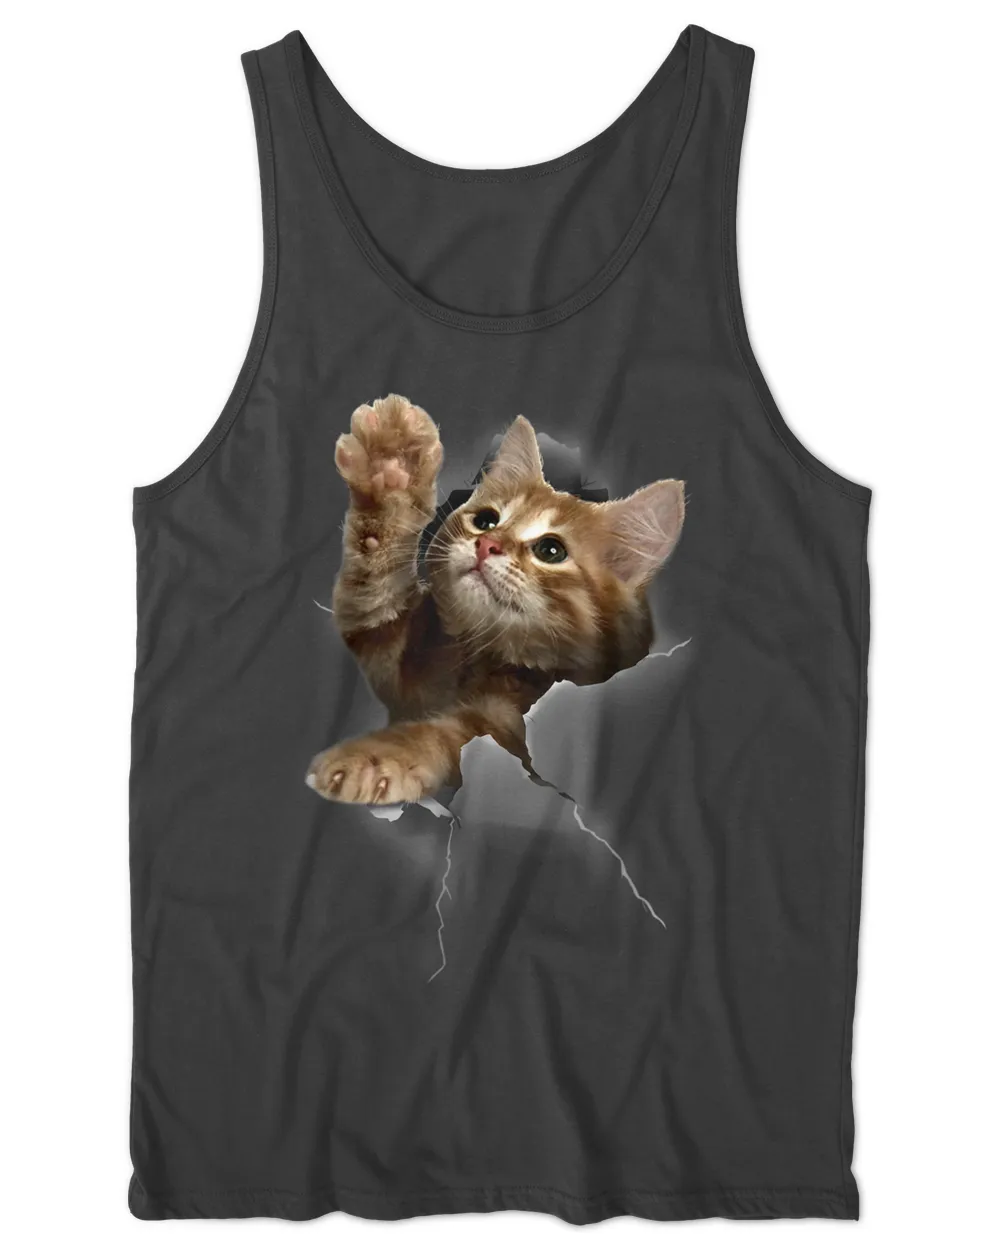 Lovely Kitten Cracked Wall T-Shirt Cats HOC010423A9